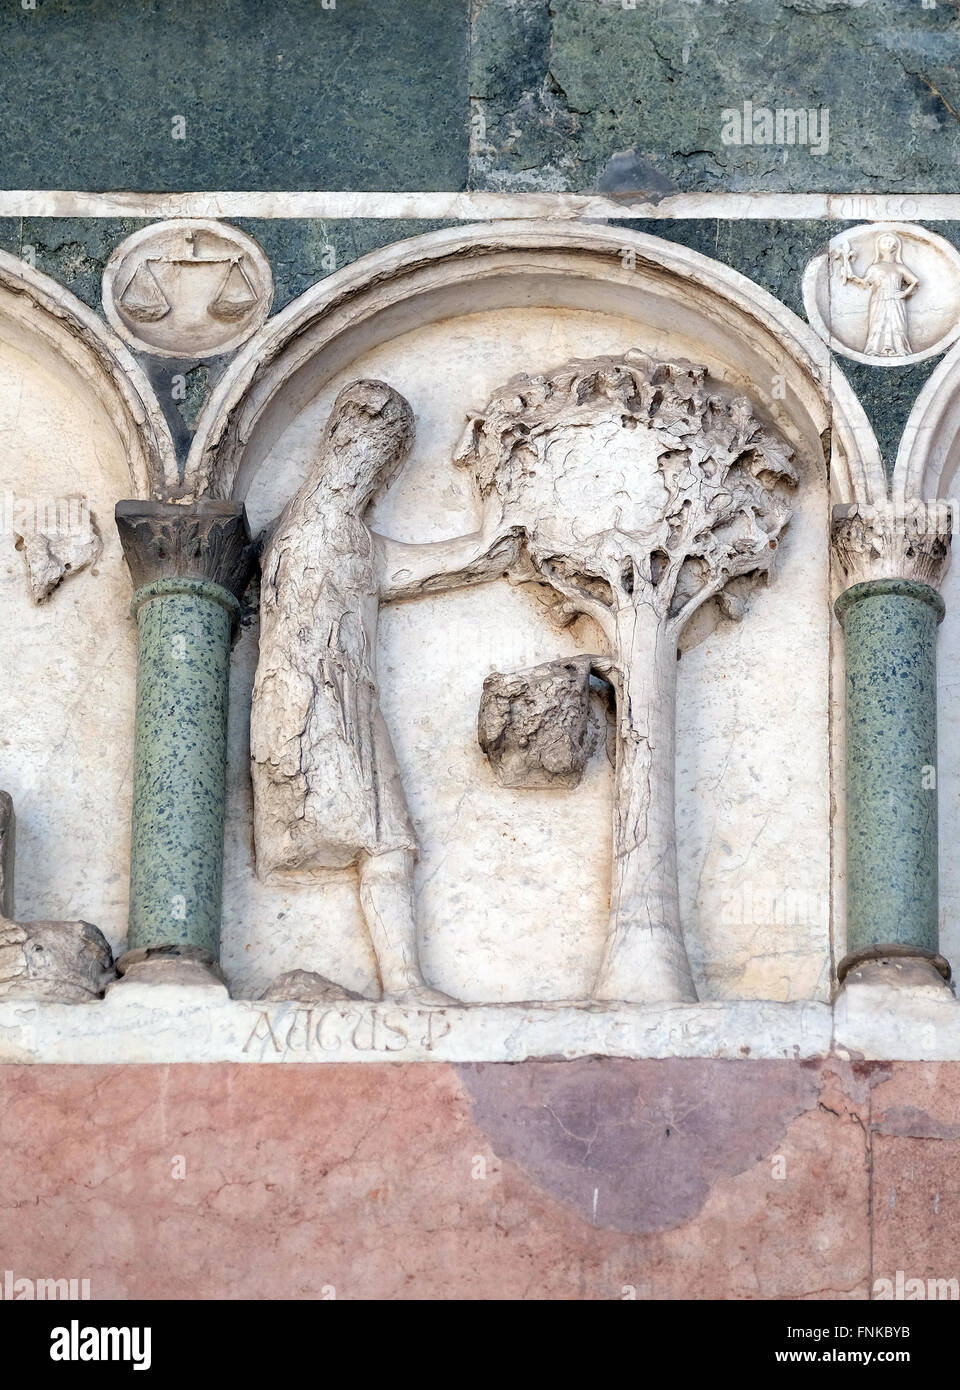 August, Basrelief repräsentieren die Arbeit der Monate des Jahres, Portal der Kathedrale von St. Martin in Lucca, Italien Stockfoto